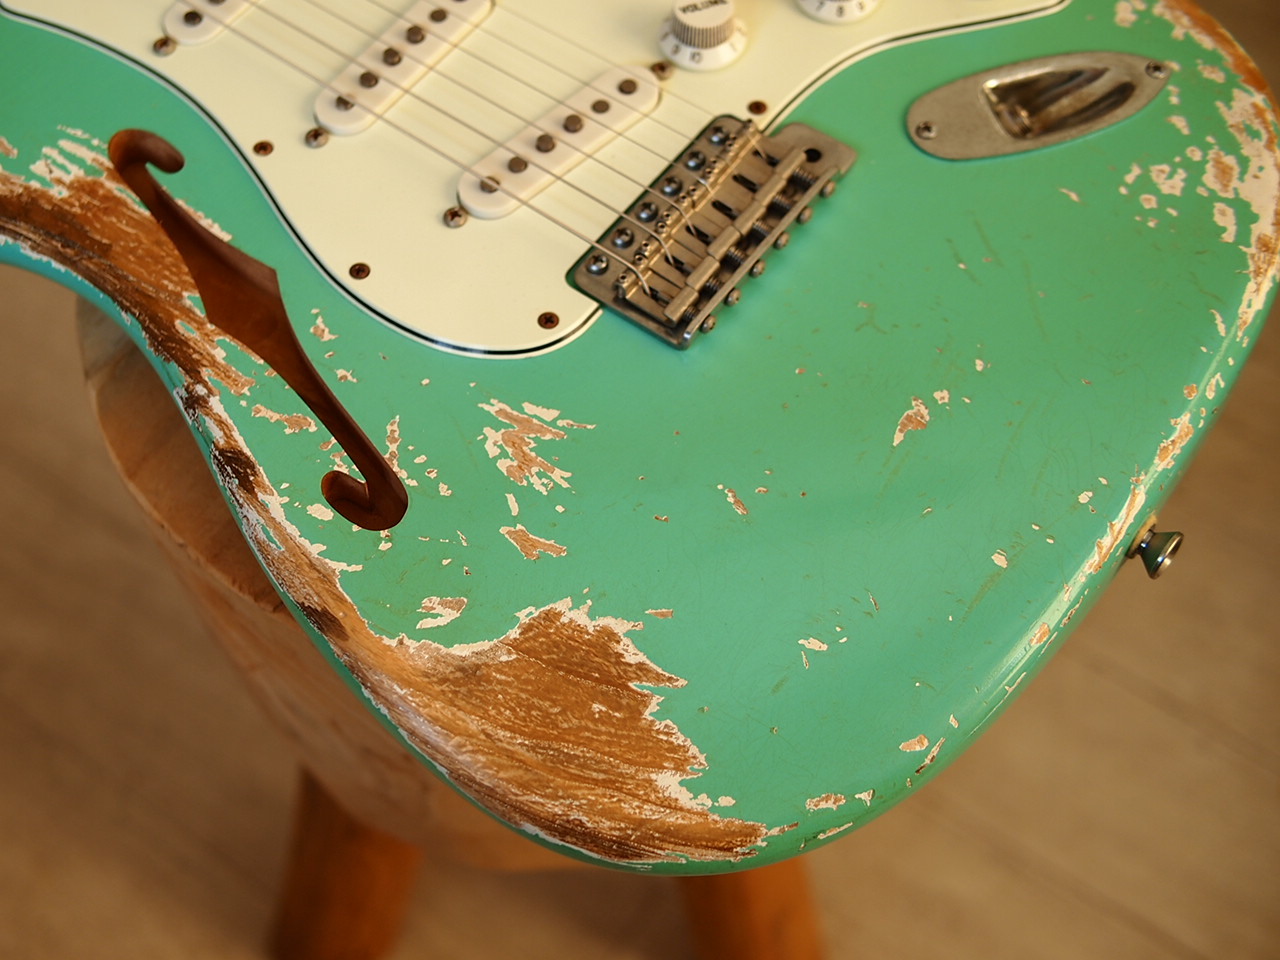 Fender 50's Stratocaster MJT Surf Green